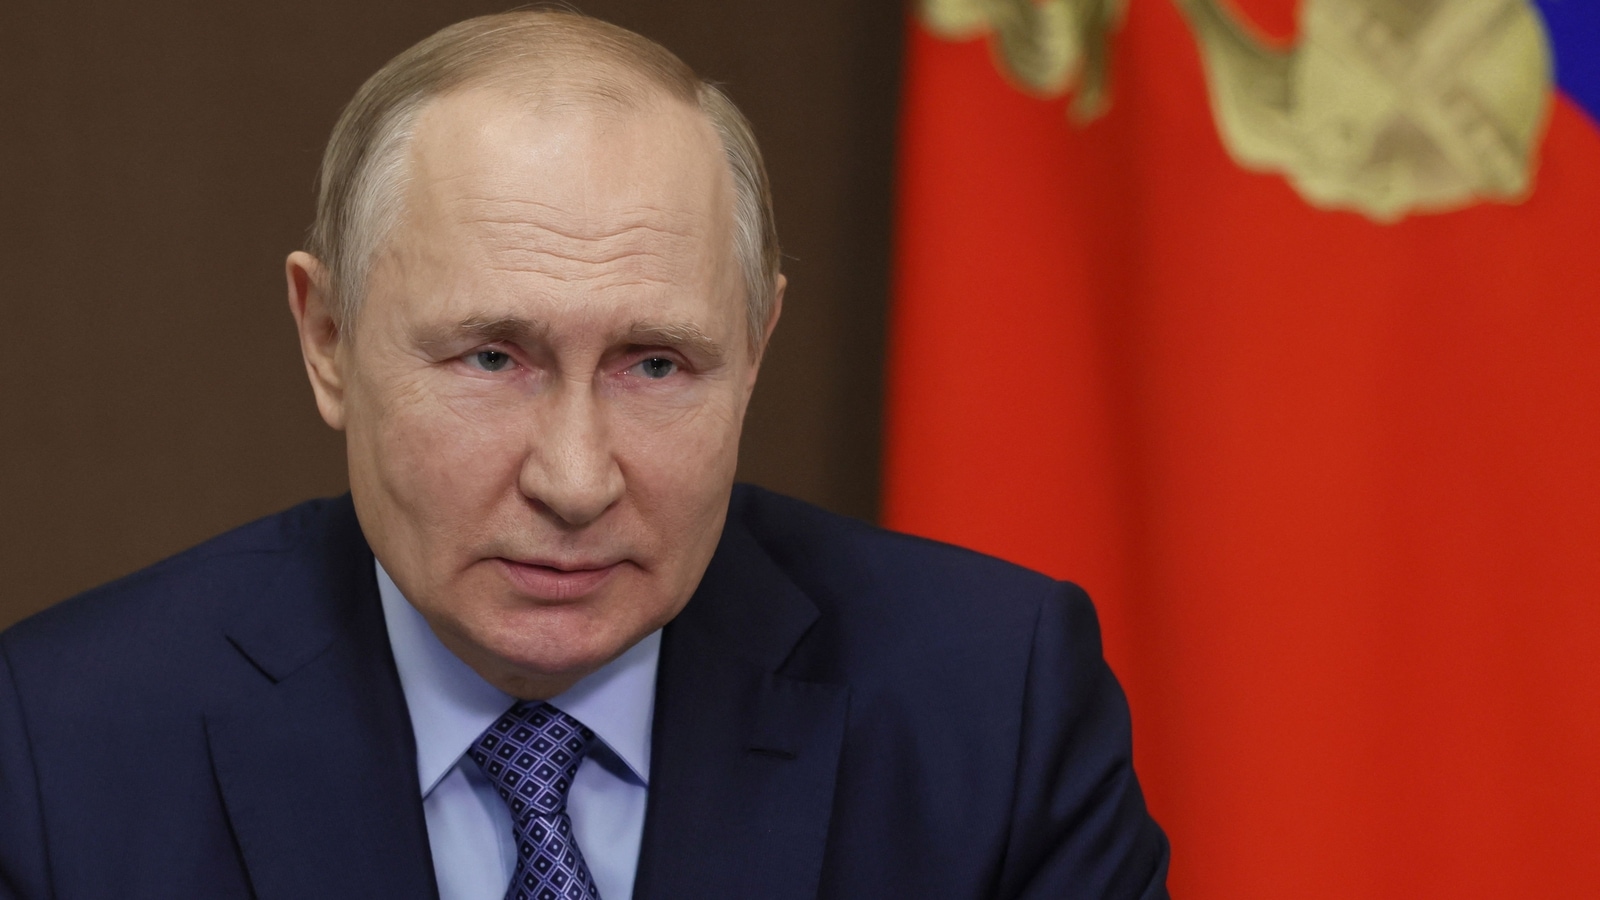 ¿Vladimir Putin está luchando contra dos enfermedades potencialmente mortales?  Un documento filtrado dice… |  noticias del mundo